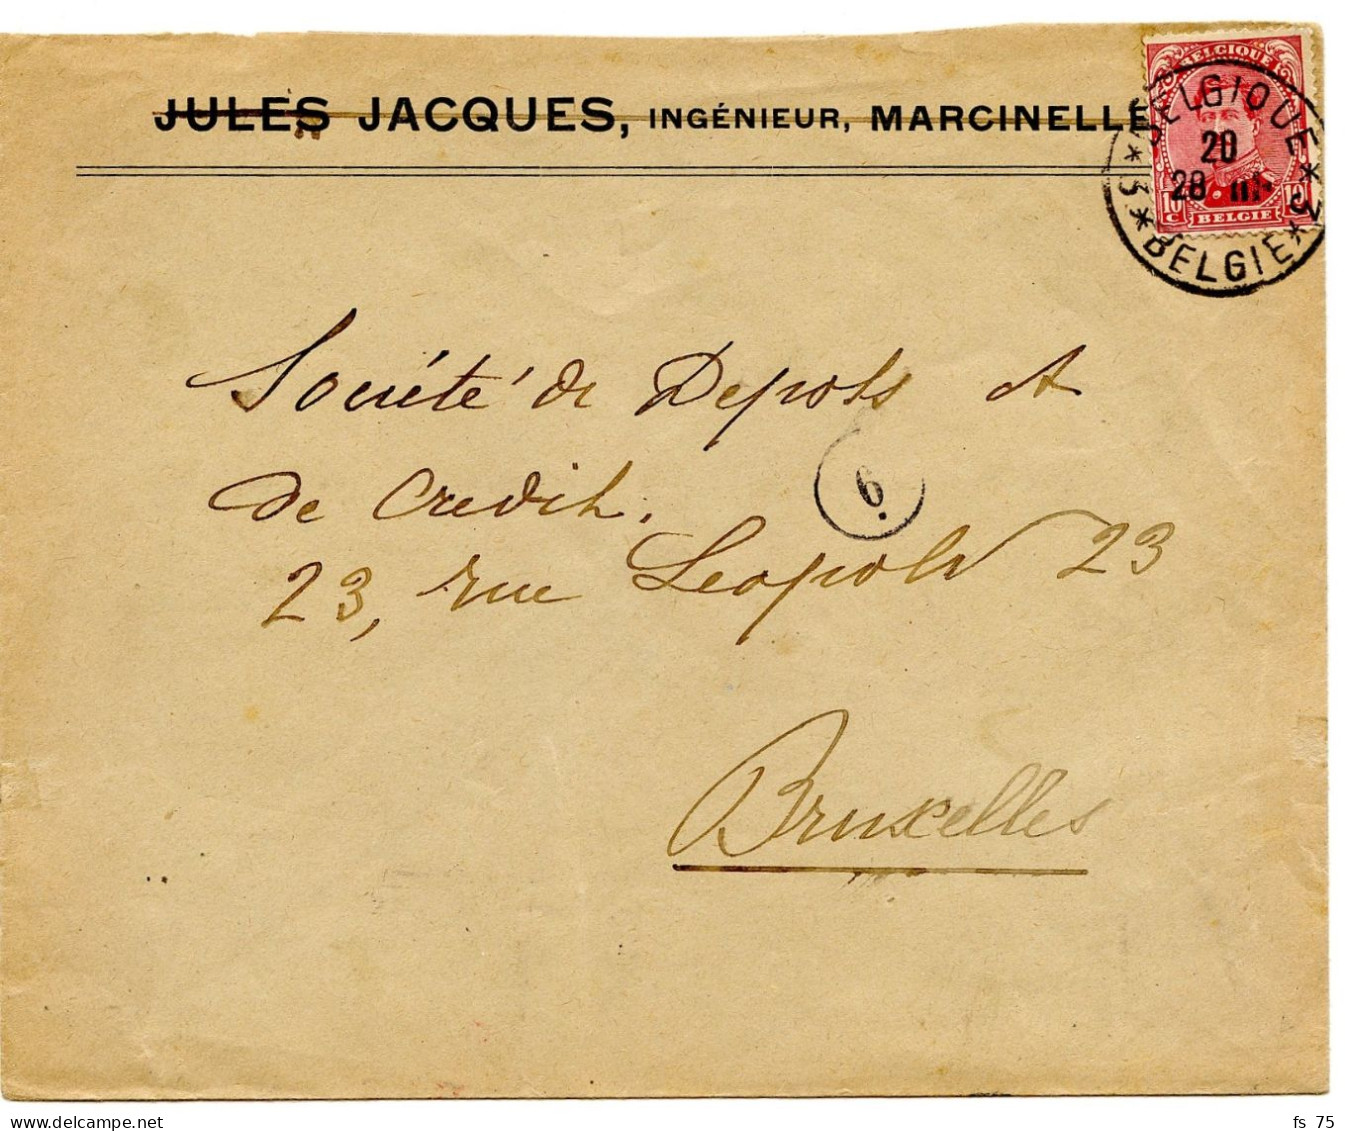 BELGIQUE - COB 138 SIMPLE CERCLE BILINGUE 3 * BELGIQUE * 3  SUR LETTRE DE MARCINELLE, 1919 - Covers & Documents